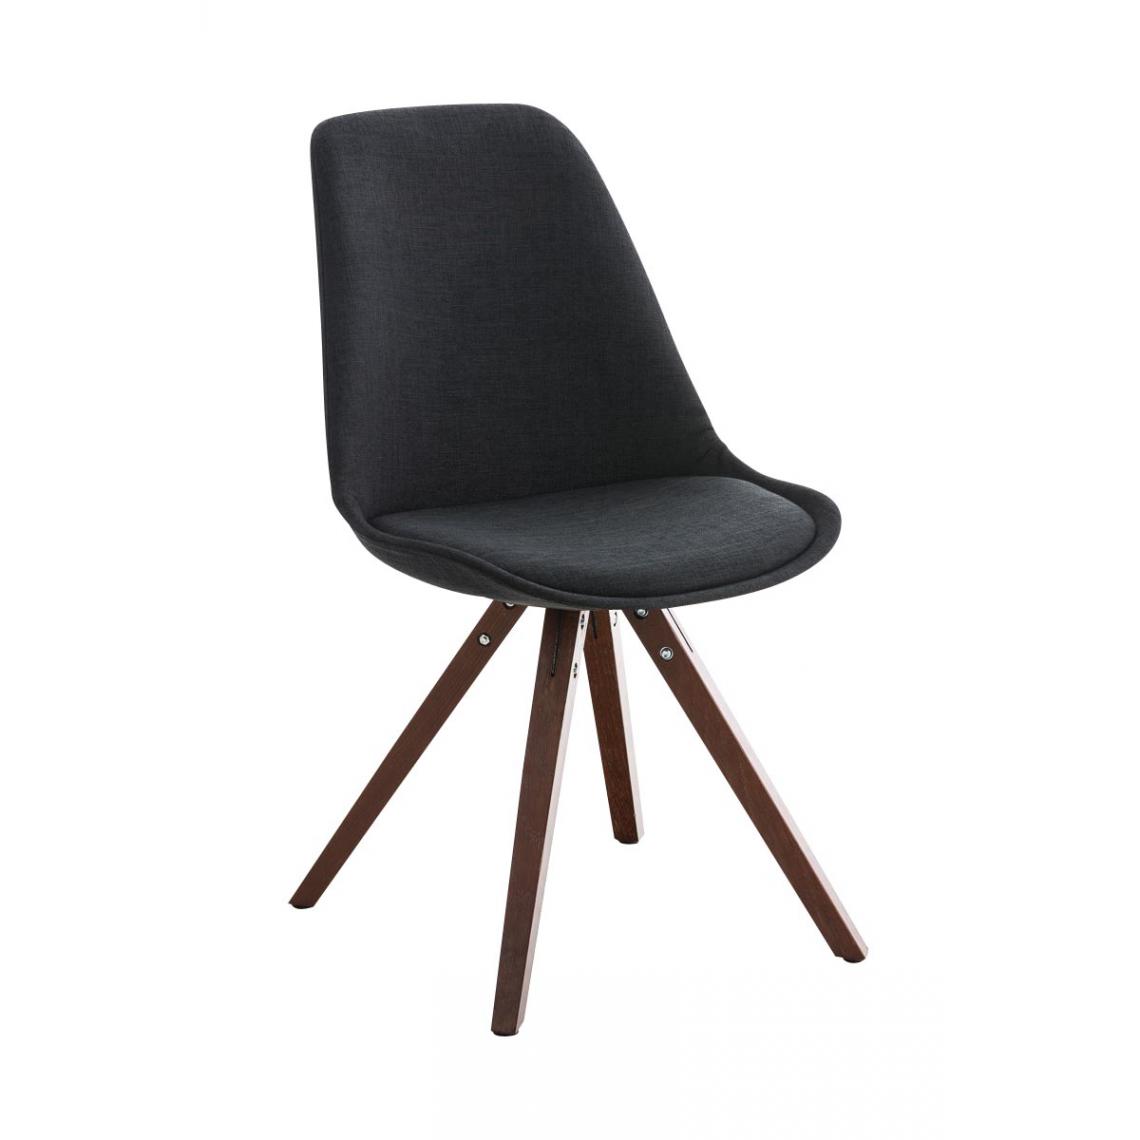 Icaverne - Moderne Chaise carrée en tissu noyer categorie Manille couleur noir - Chaises